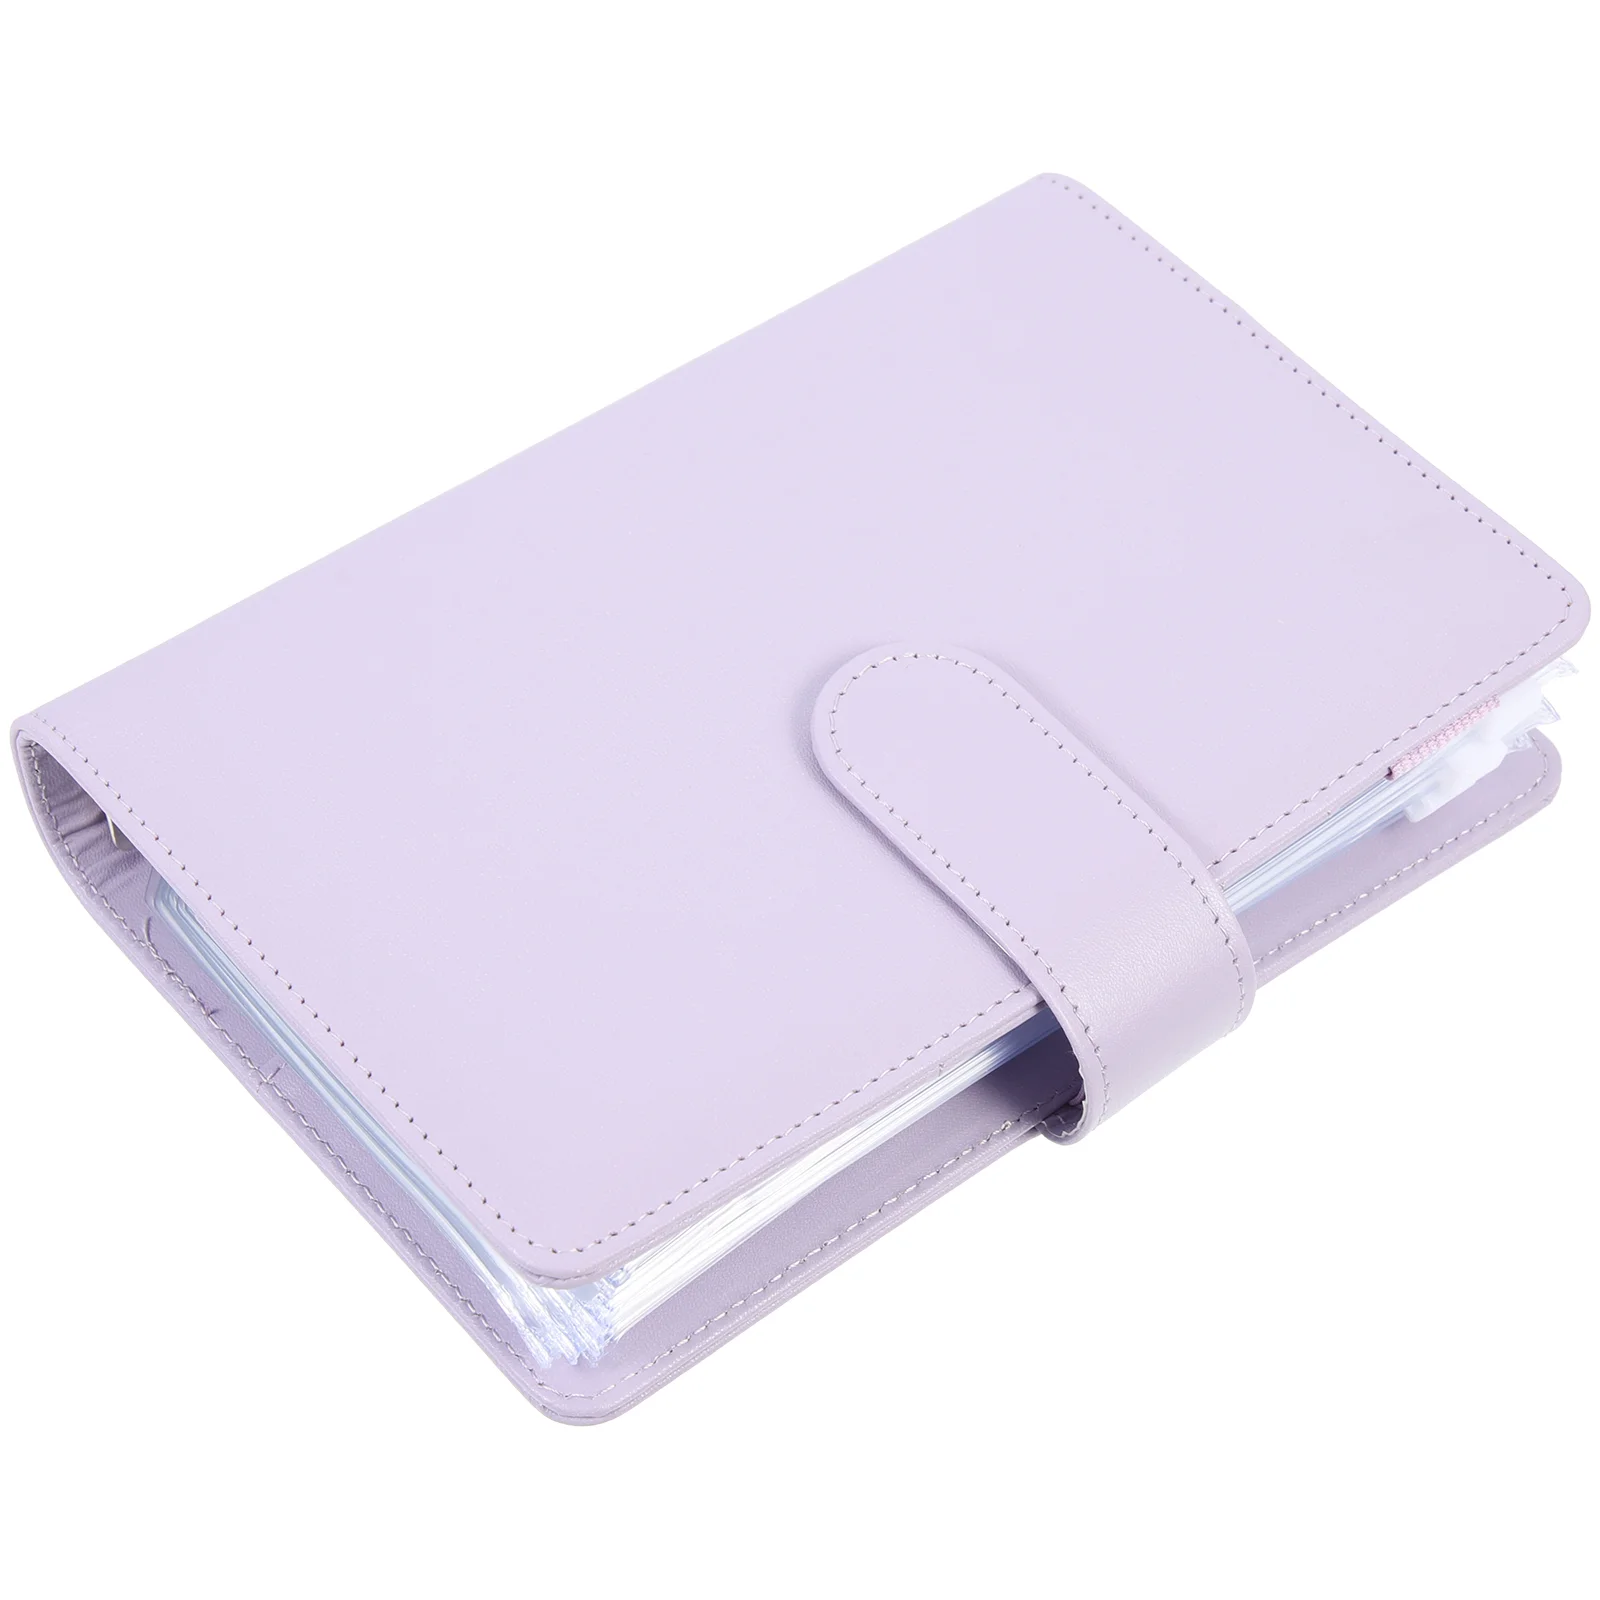 

Binder Budget Book Money Folder Wallet Cash Artwork Portfolio Envelope Compact Notebook A6 Planner Portable Zipper Loose Leaf